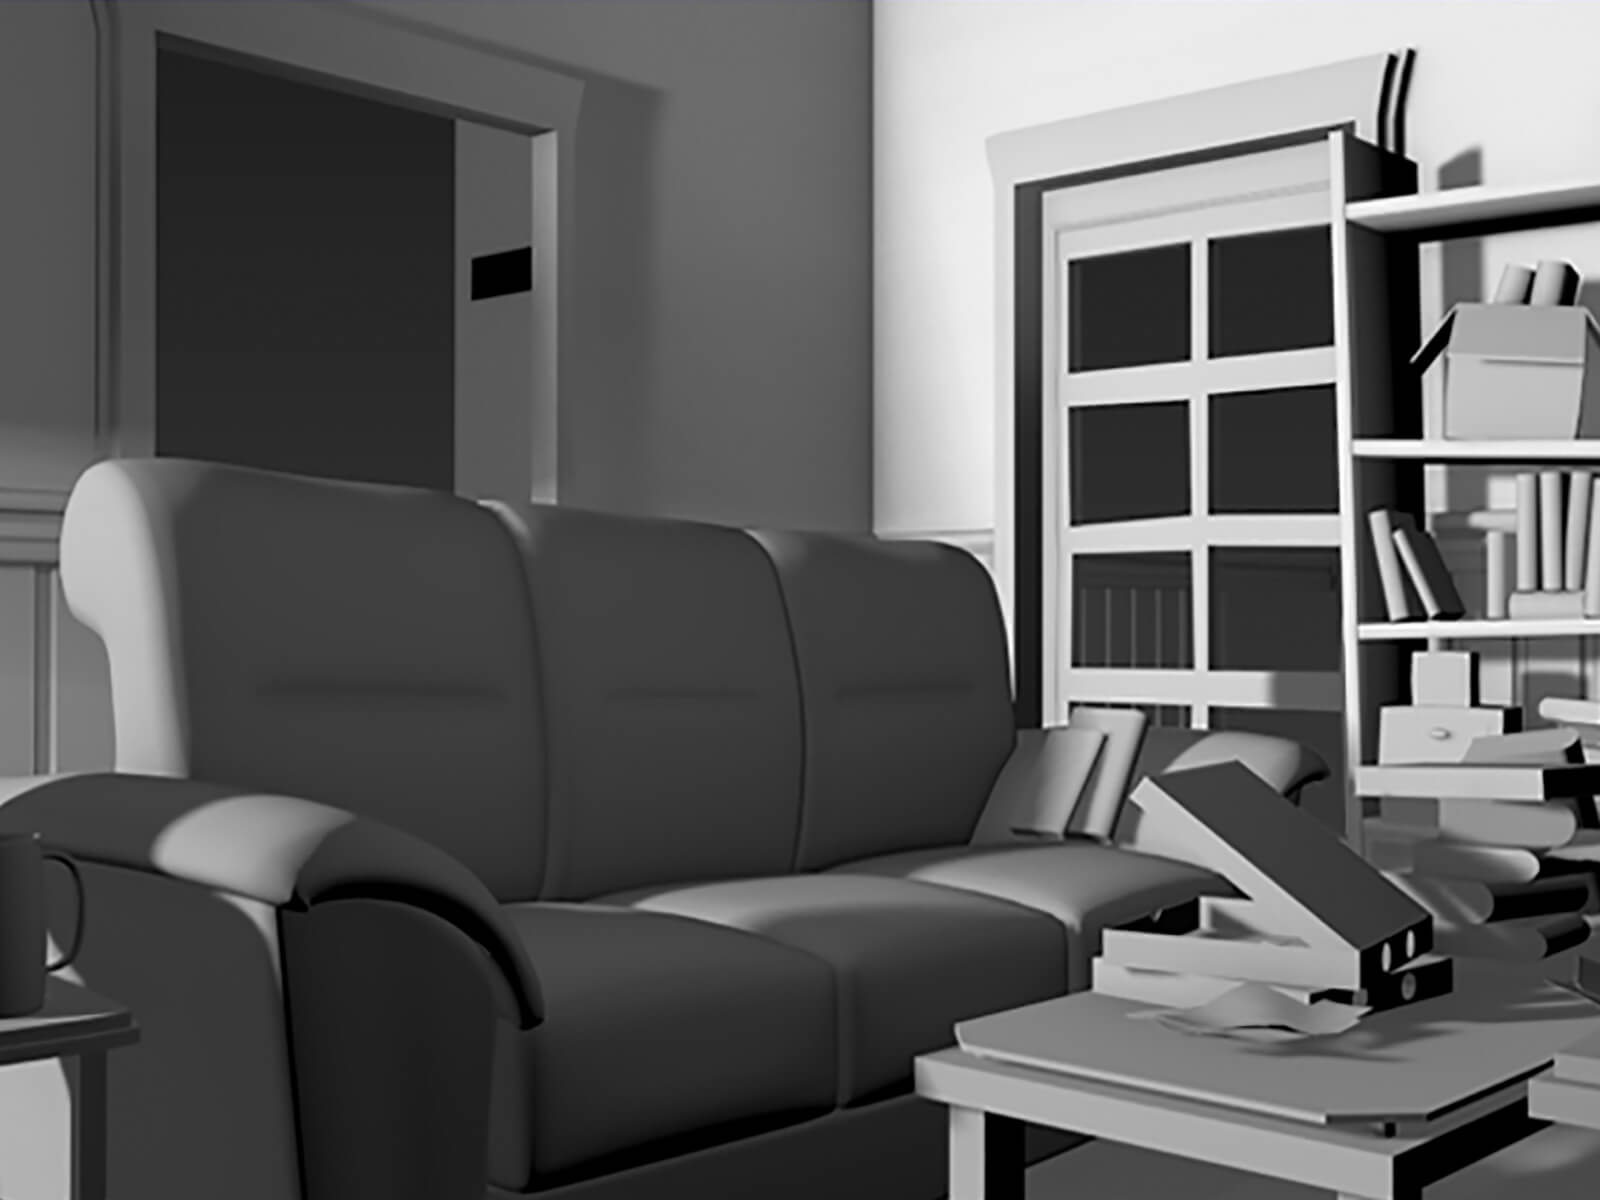 Una sala de estar incolora modelada en 3D con un sofá frente a una pequeña mesa de café con una caja de pizza y libros apilados encima.